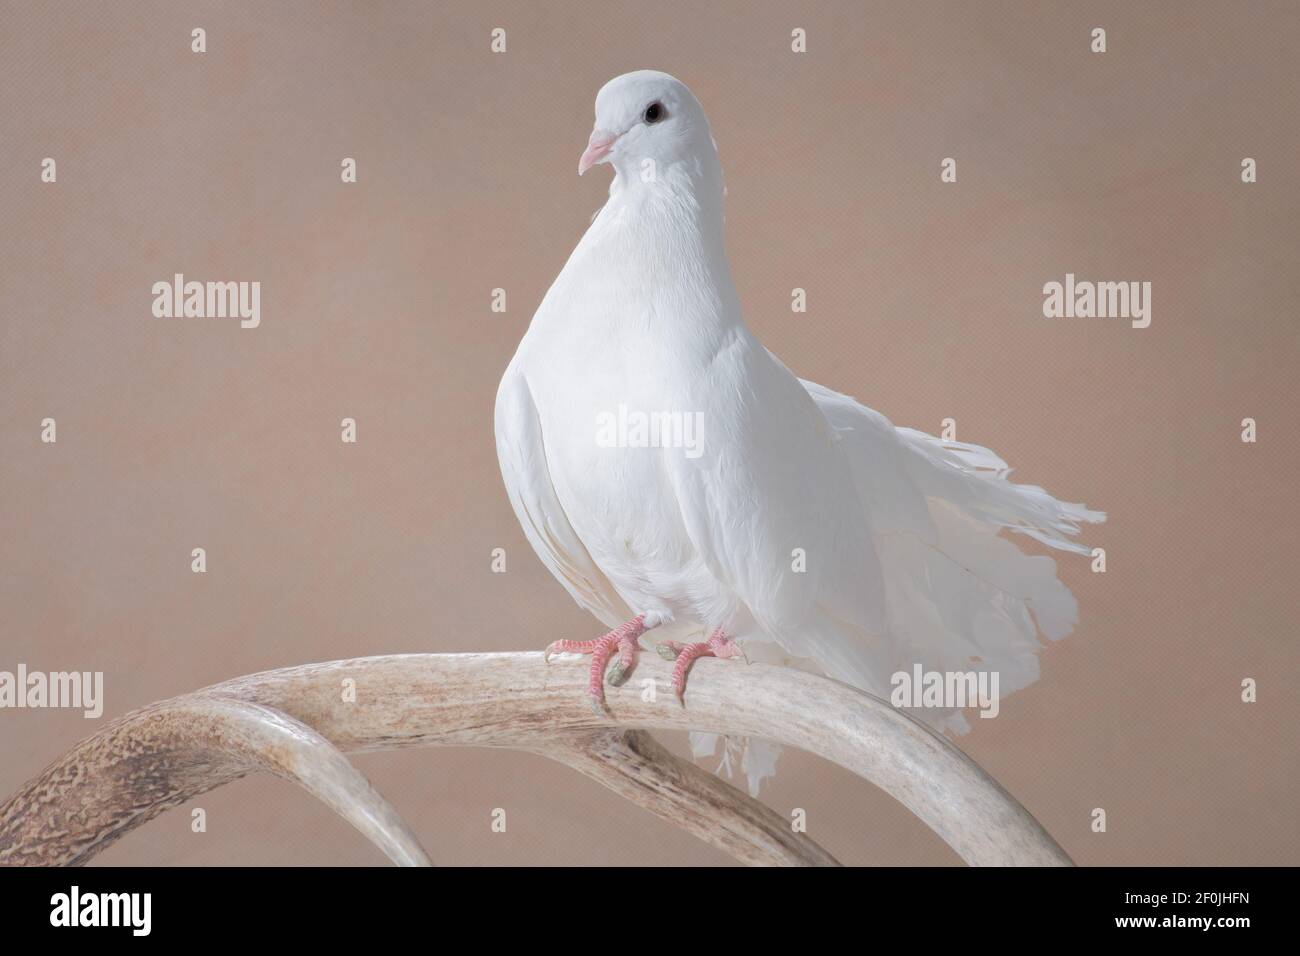 Le pigeon blanc, une race de paon, en profil, est assis sur une corne de cerf sur un fond beige dans la salle de studio, photo horizontale Banque D'Images